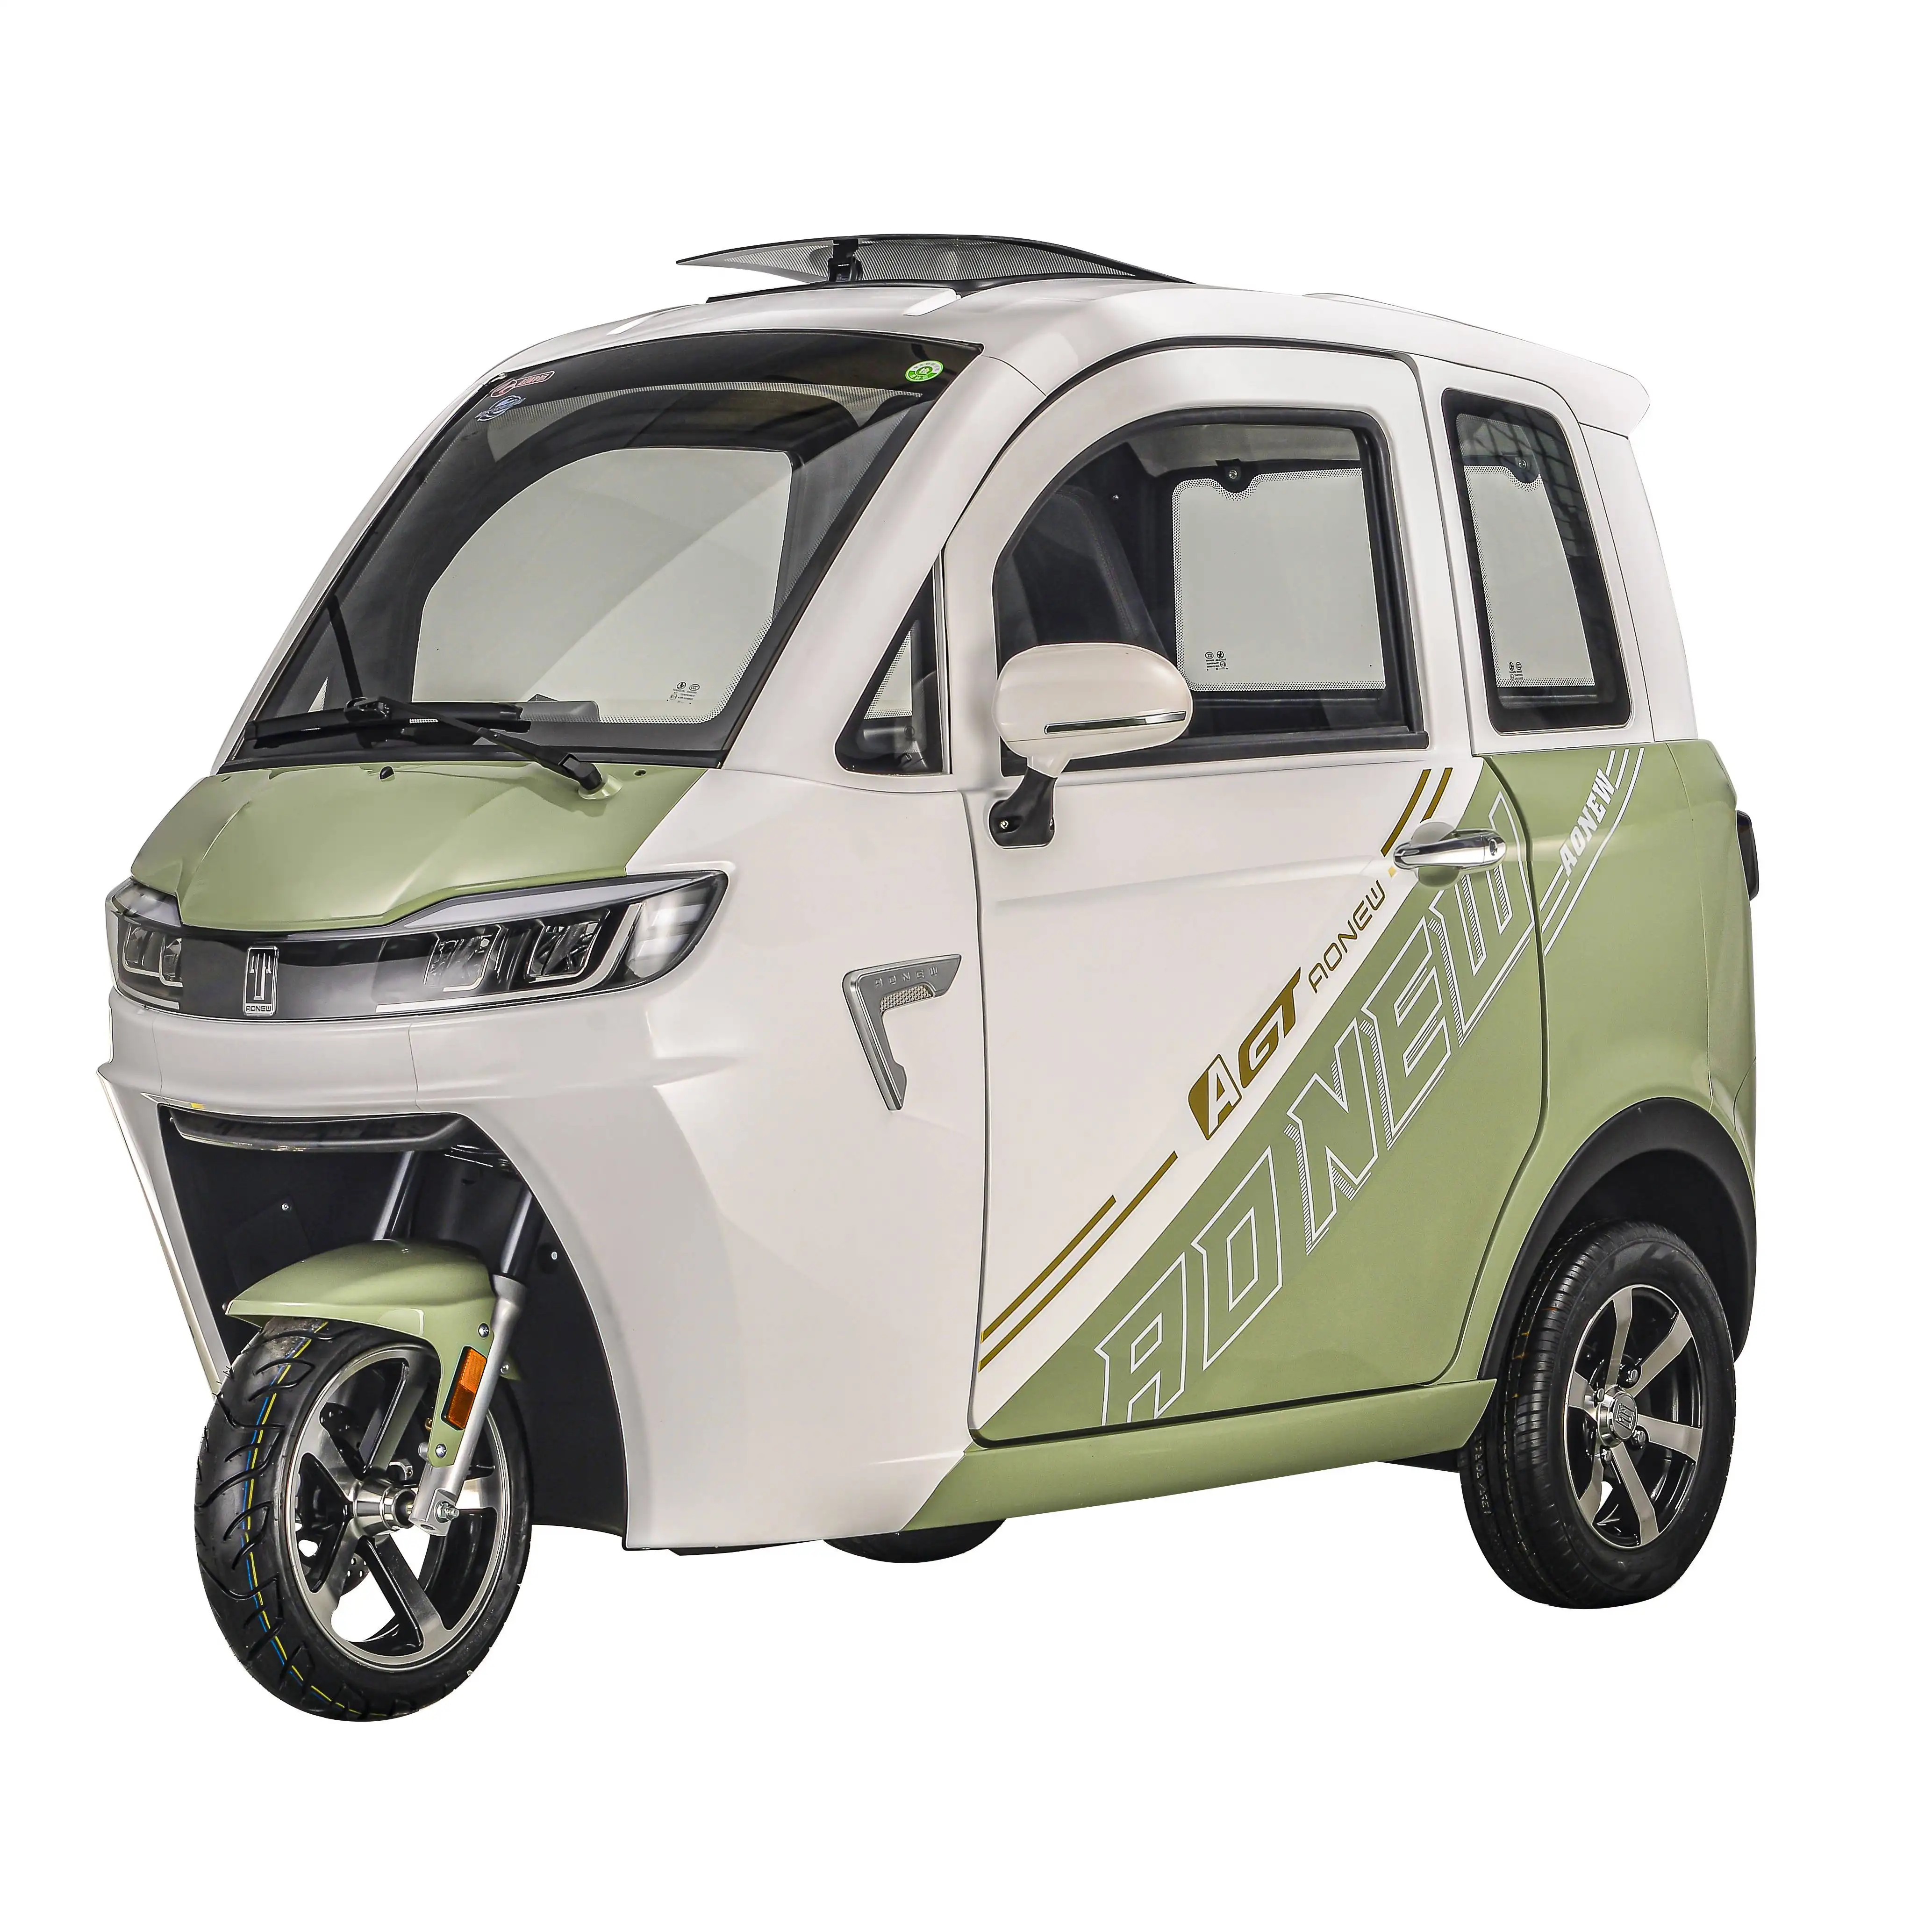 Sepeda roda tiga listrik panas, skuter 1500w mobil mini keluarga kendaraan listrik 2 tempat duduk